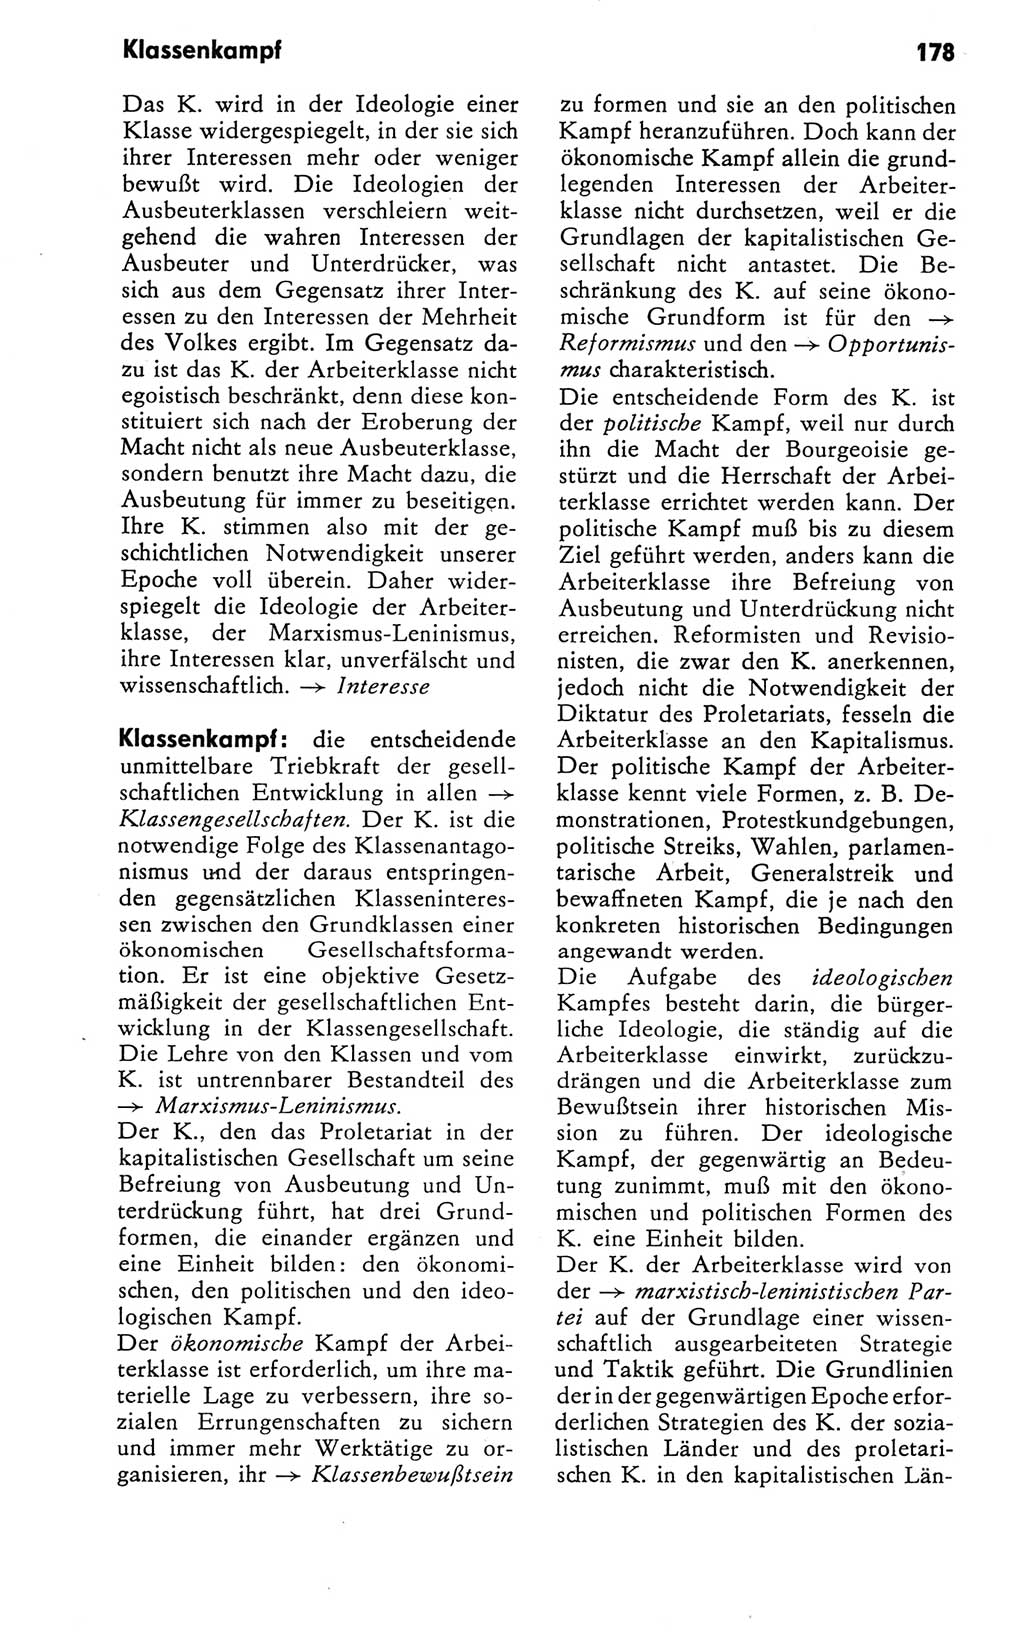 Kleines Wörterbuch der marxistisch-leninistischen Philosophie [Deutsche Demokratische Republik (DDR)] 1981, Seite 178 (Kl. Wb. ML Phil. DDR 1981, S. 178)